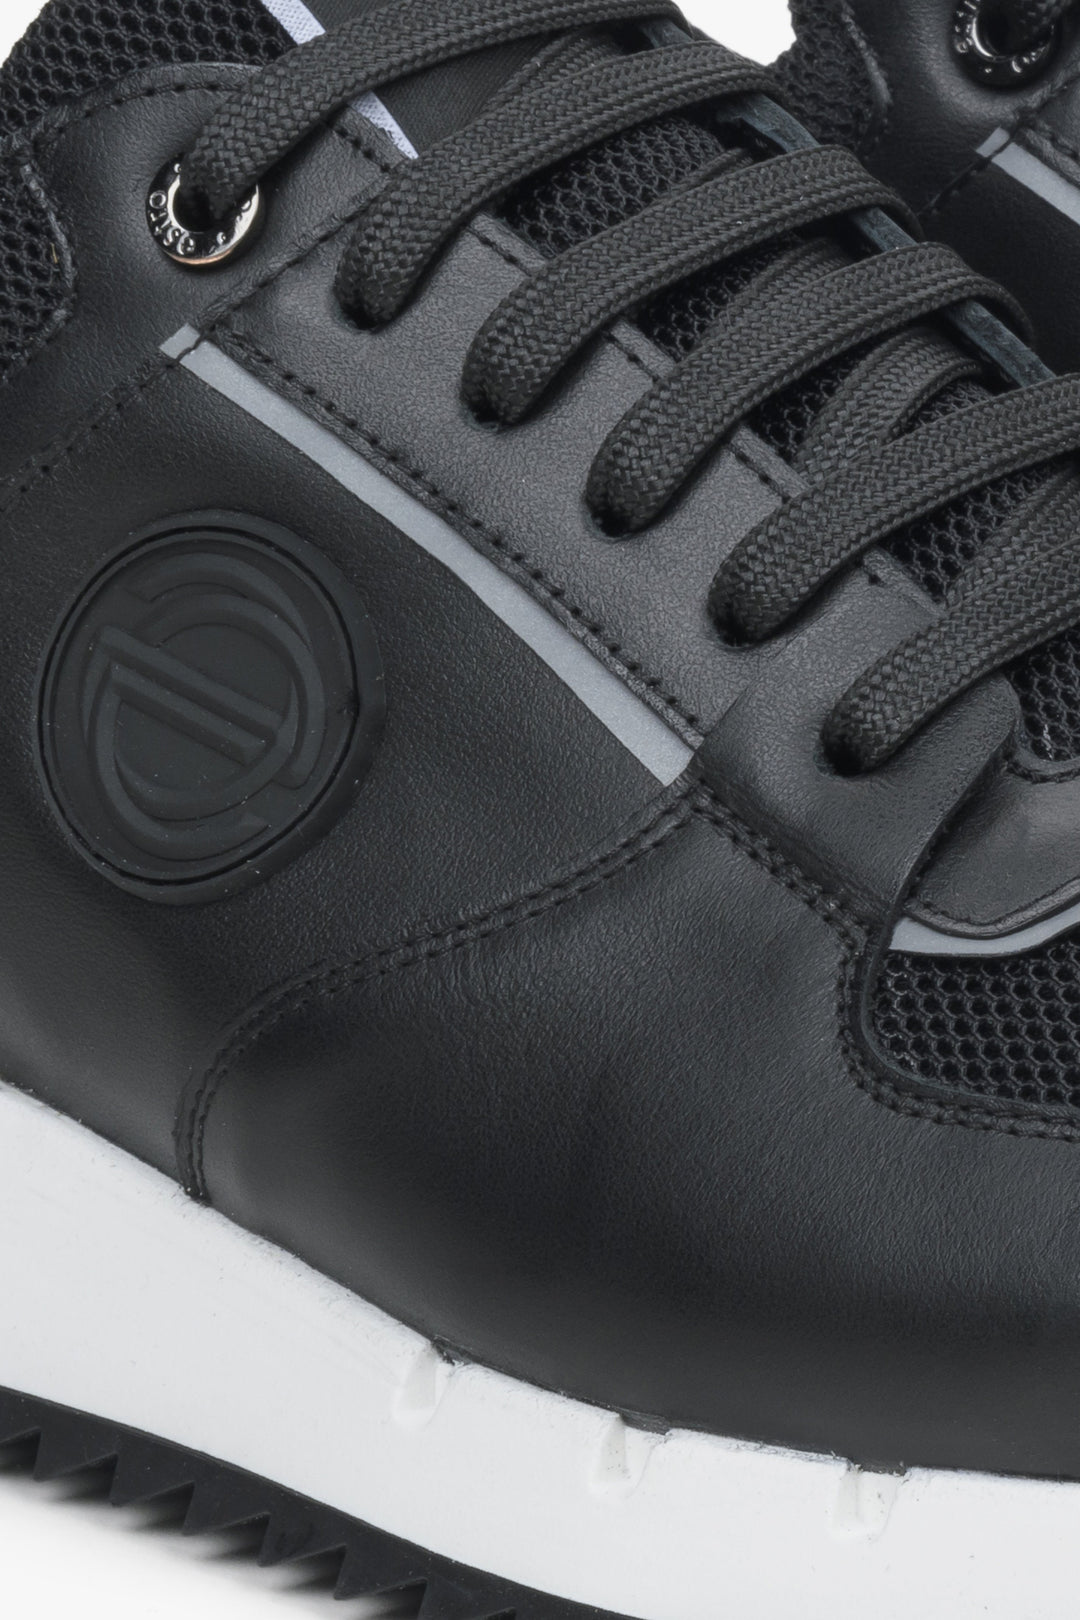 Estro men's black sneakers - close-up on details